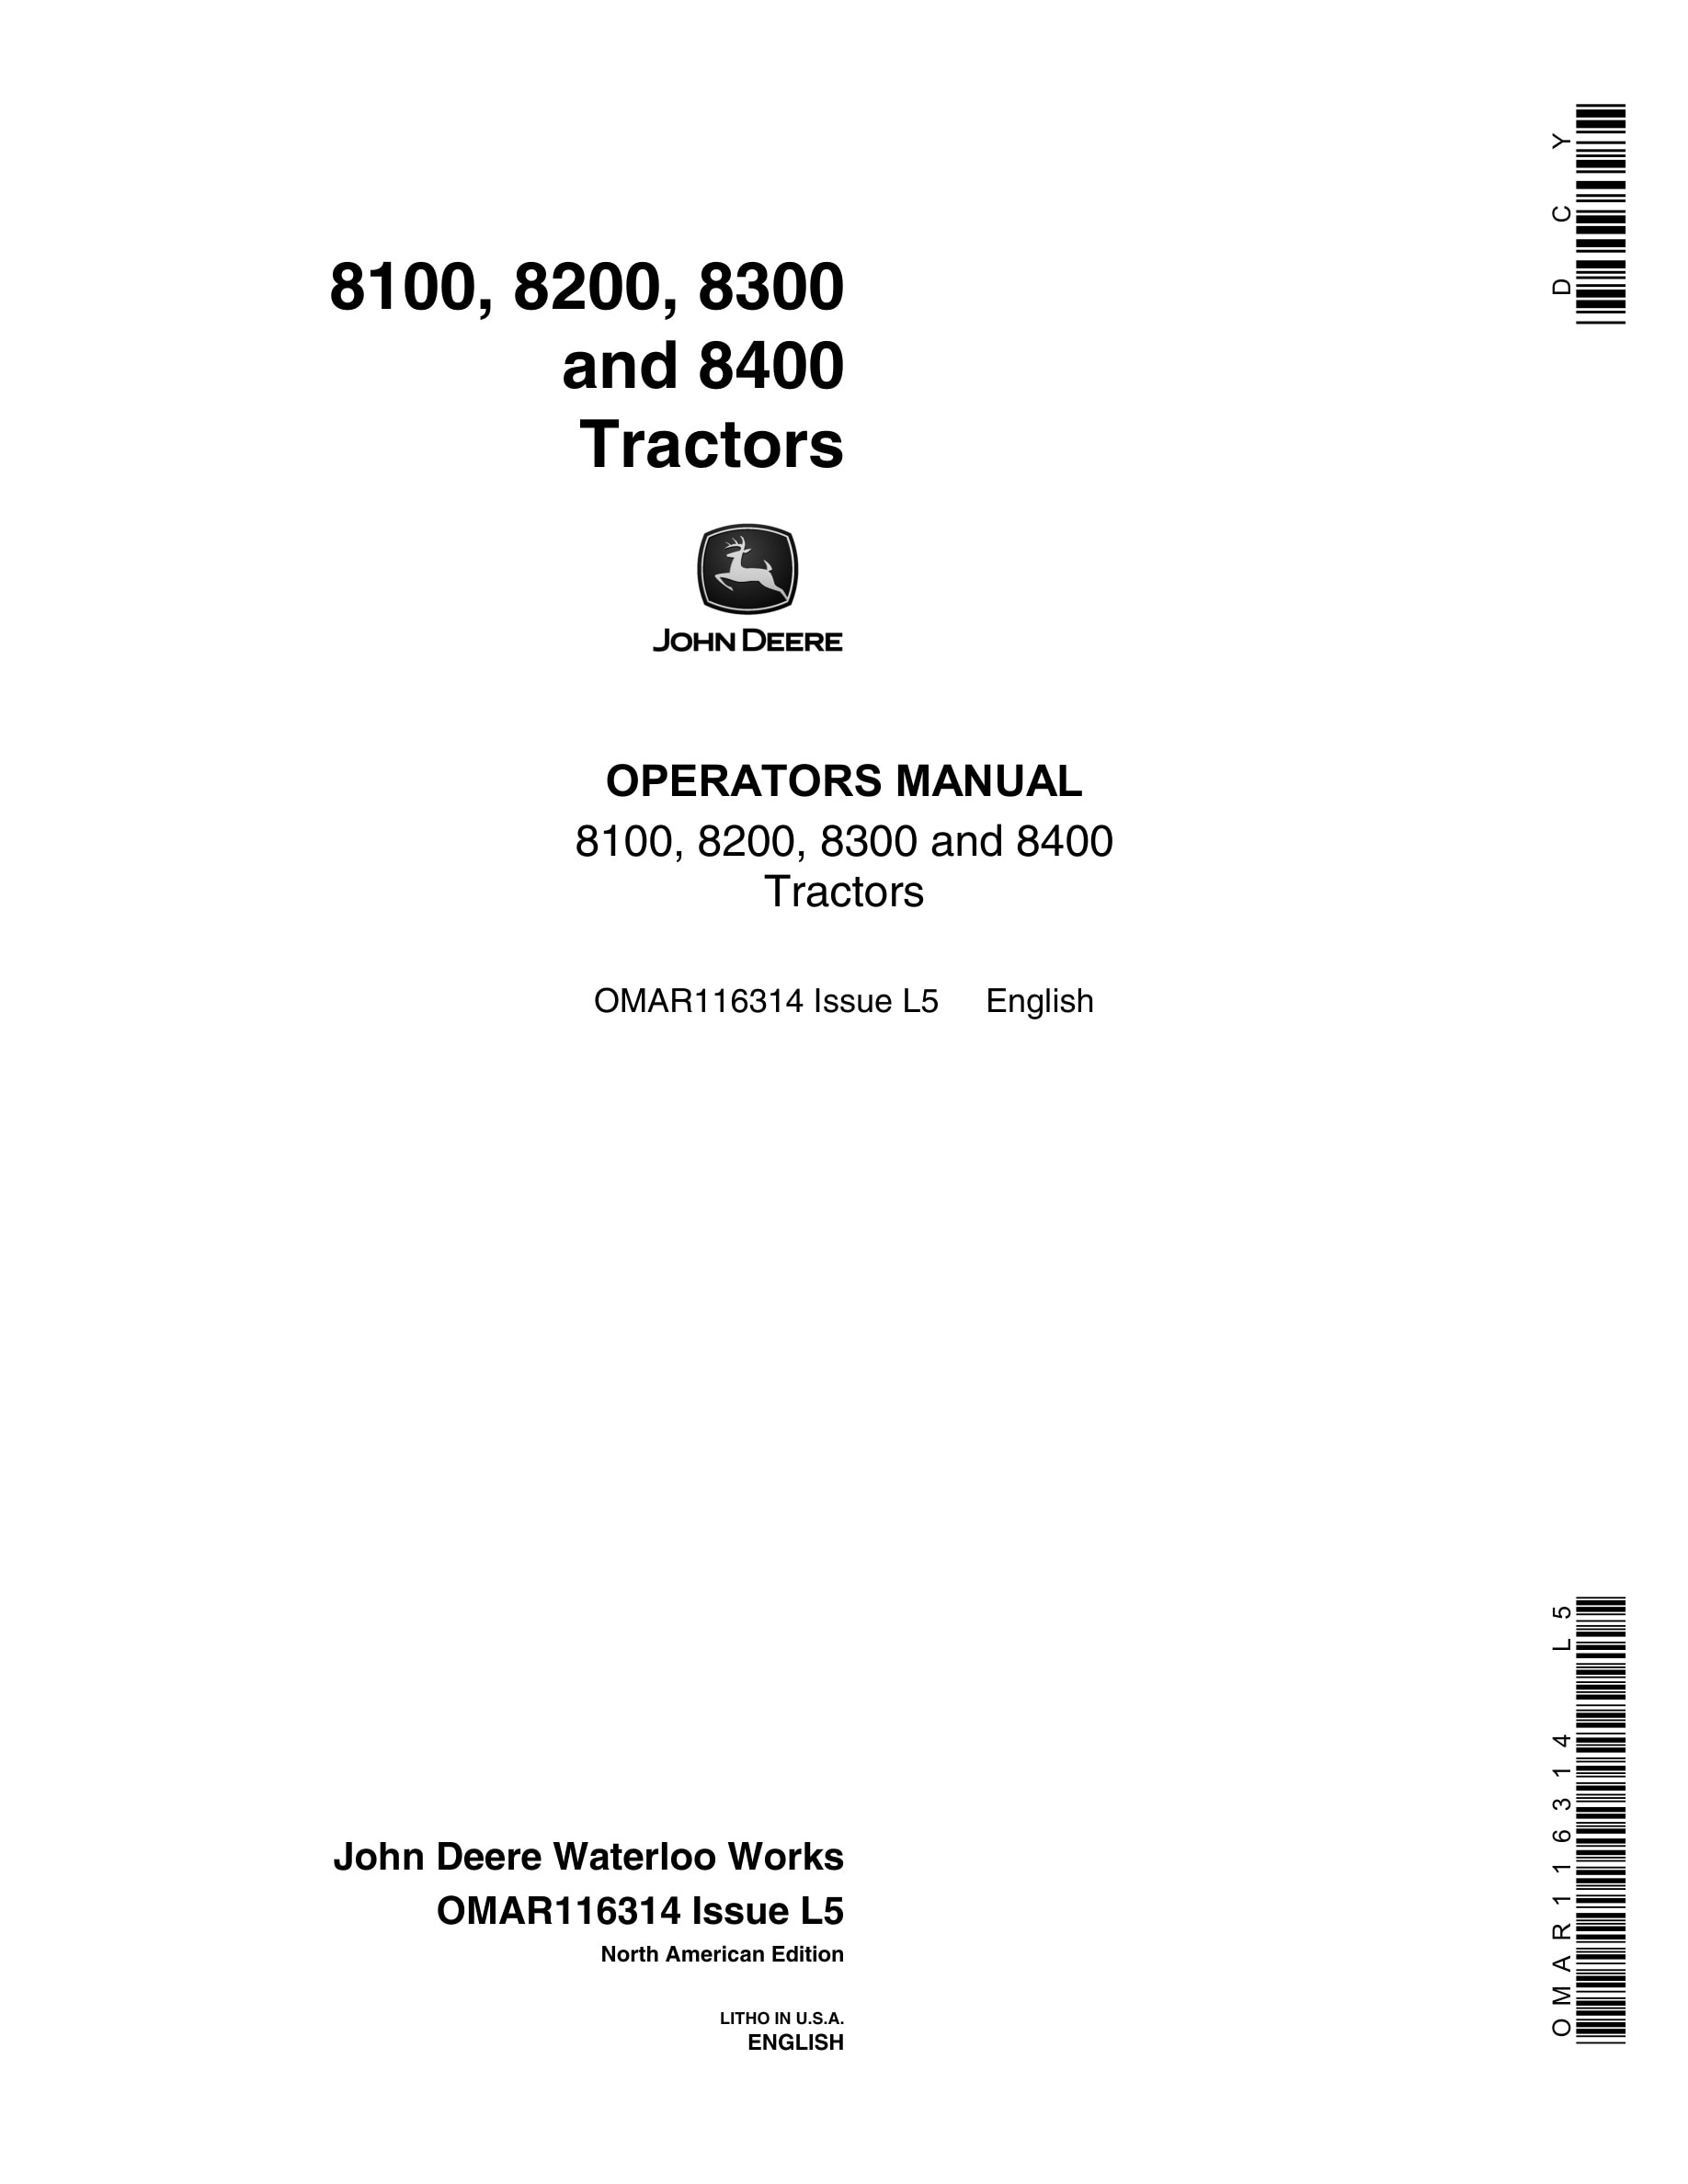 John Deere 8100, 8200, 8300 and 8400 Tractor Operator Manual OMAR116314-1